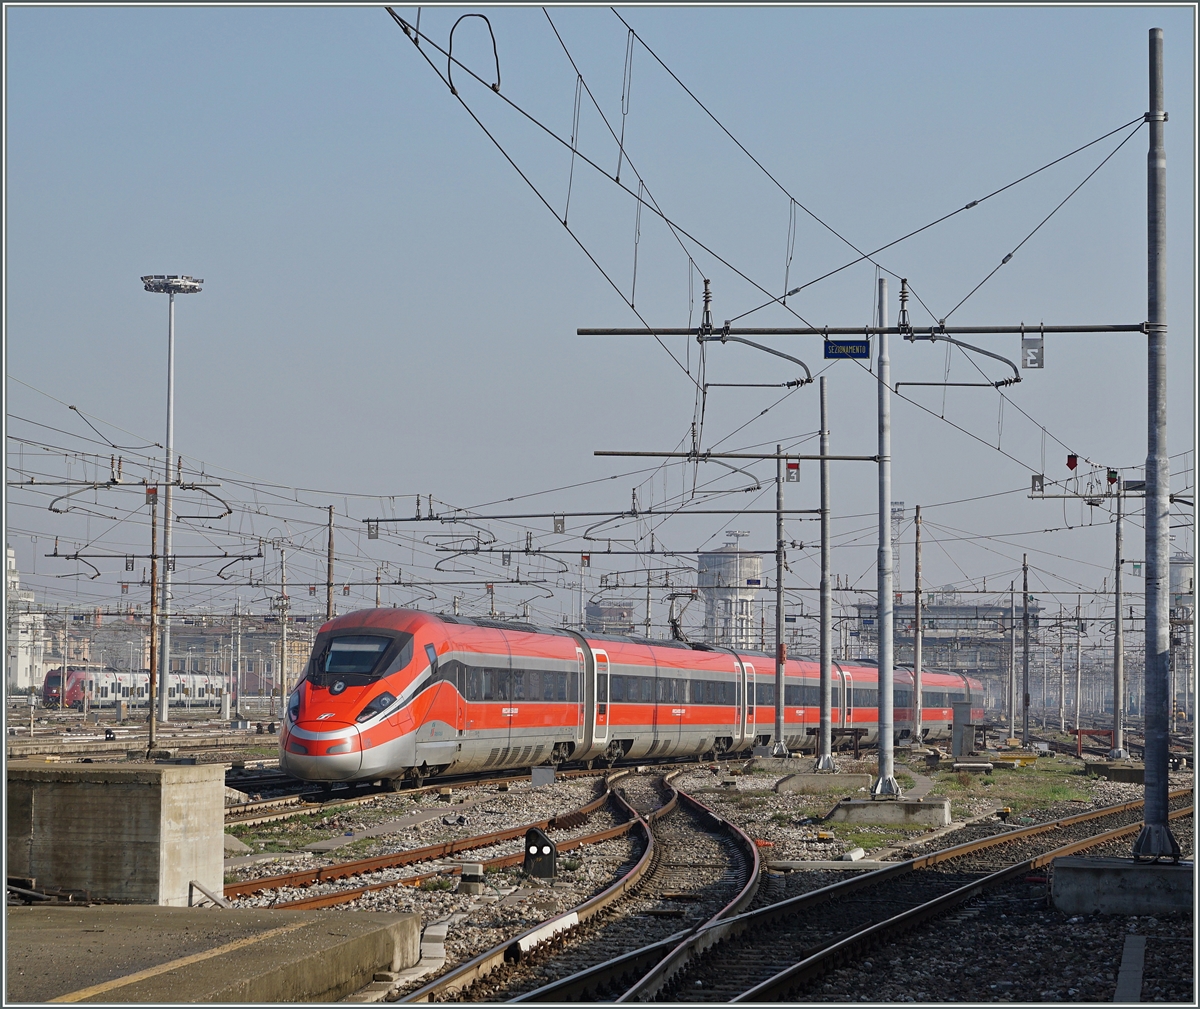 Ein FS Trenitalia ETR 400 Frecciarossa 1000 im Gleisvorvorfeld von Milano Centrale.
1. März 2016